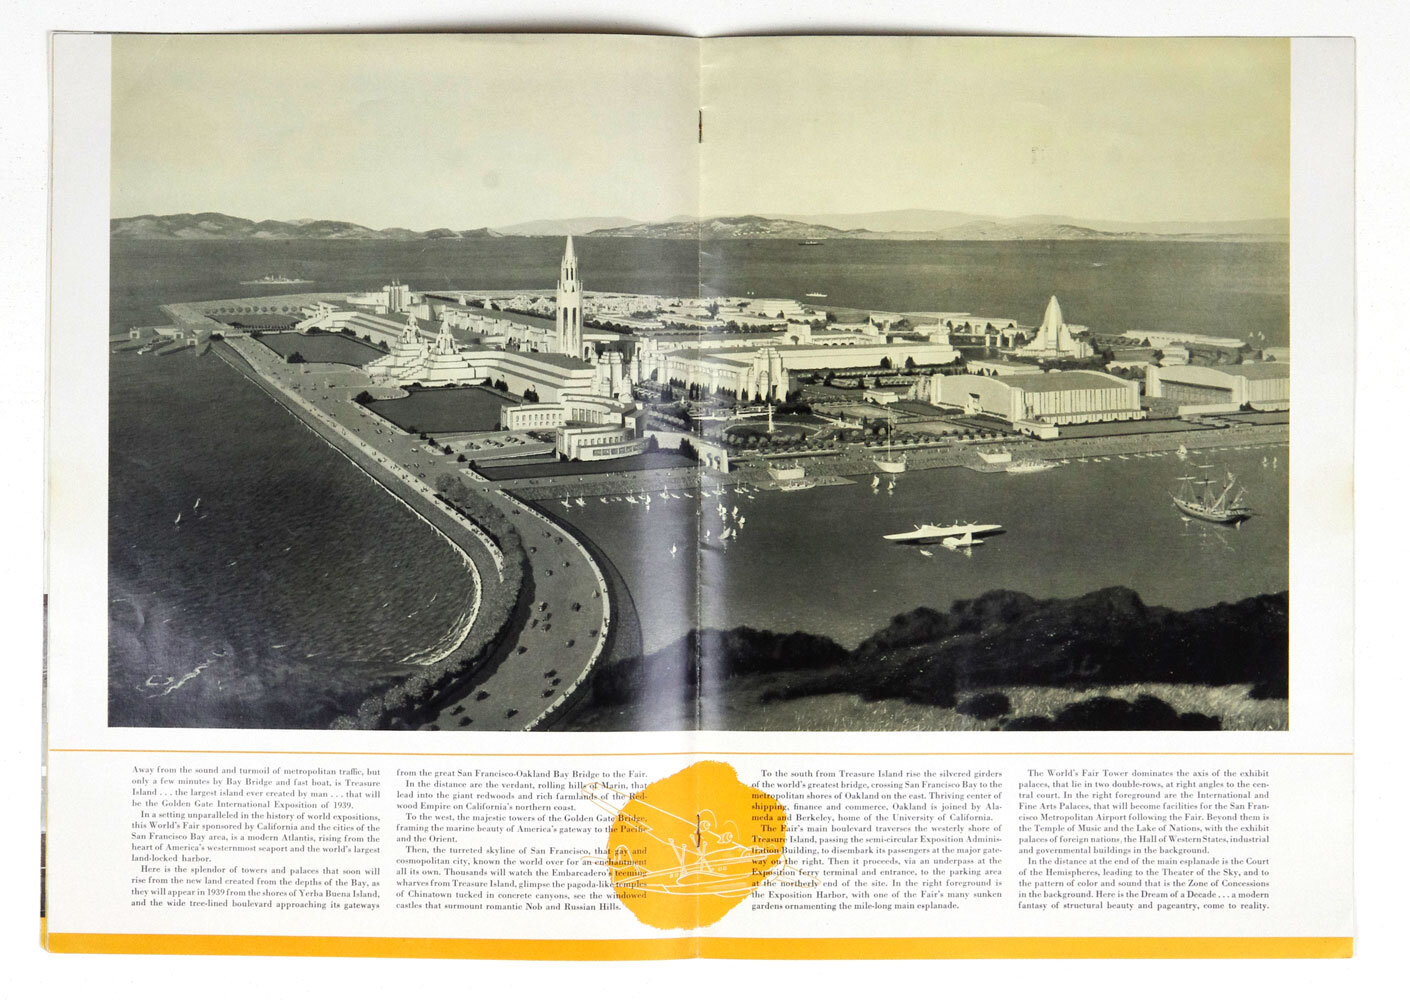 1939 World's Fair Golden Gate International Exposition Guide Book Ticket Stub Bulletin Set